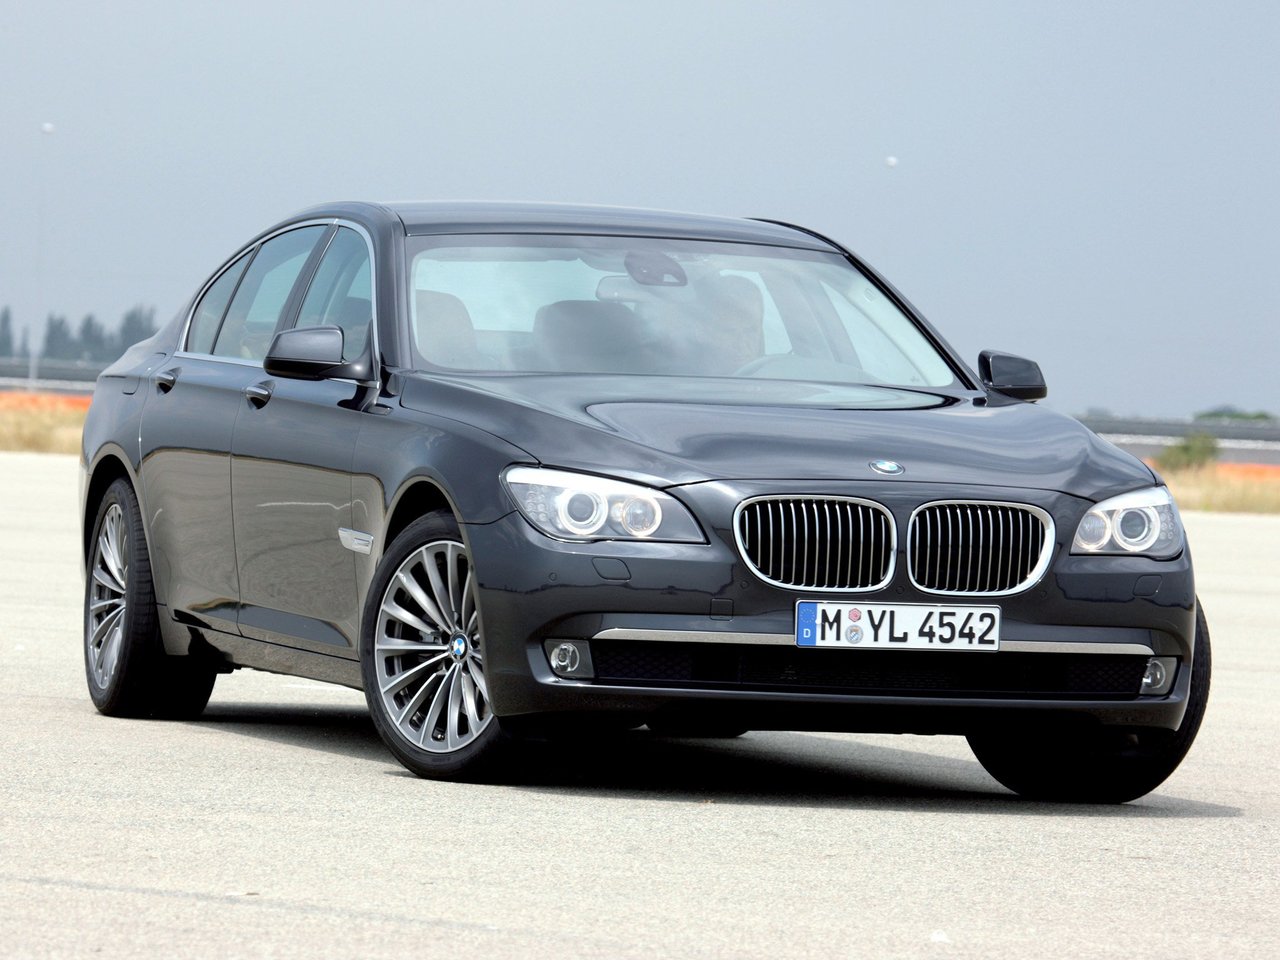 Расход газа четырёх комплектаций седана BMW 7 серия. Разница стоимости заправки газом и бензином. Автономный пробег до и после установки ГБО.